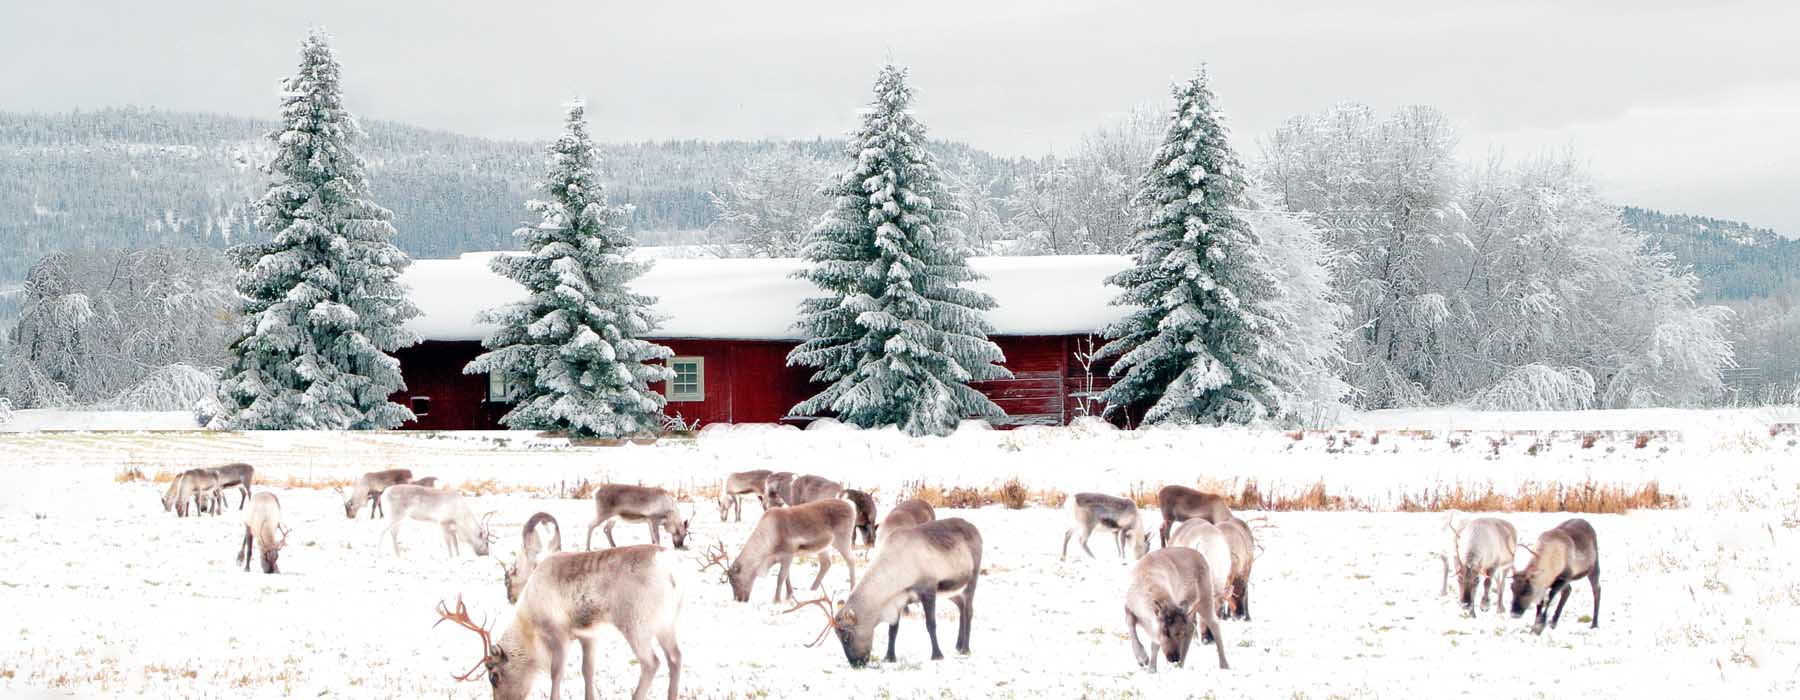 All our Finland<br class="hidden-md hidden-lg" /> Winter Holidays